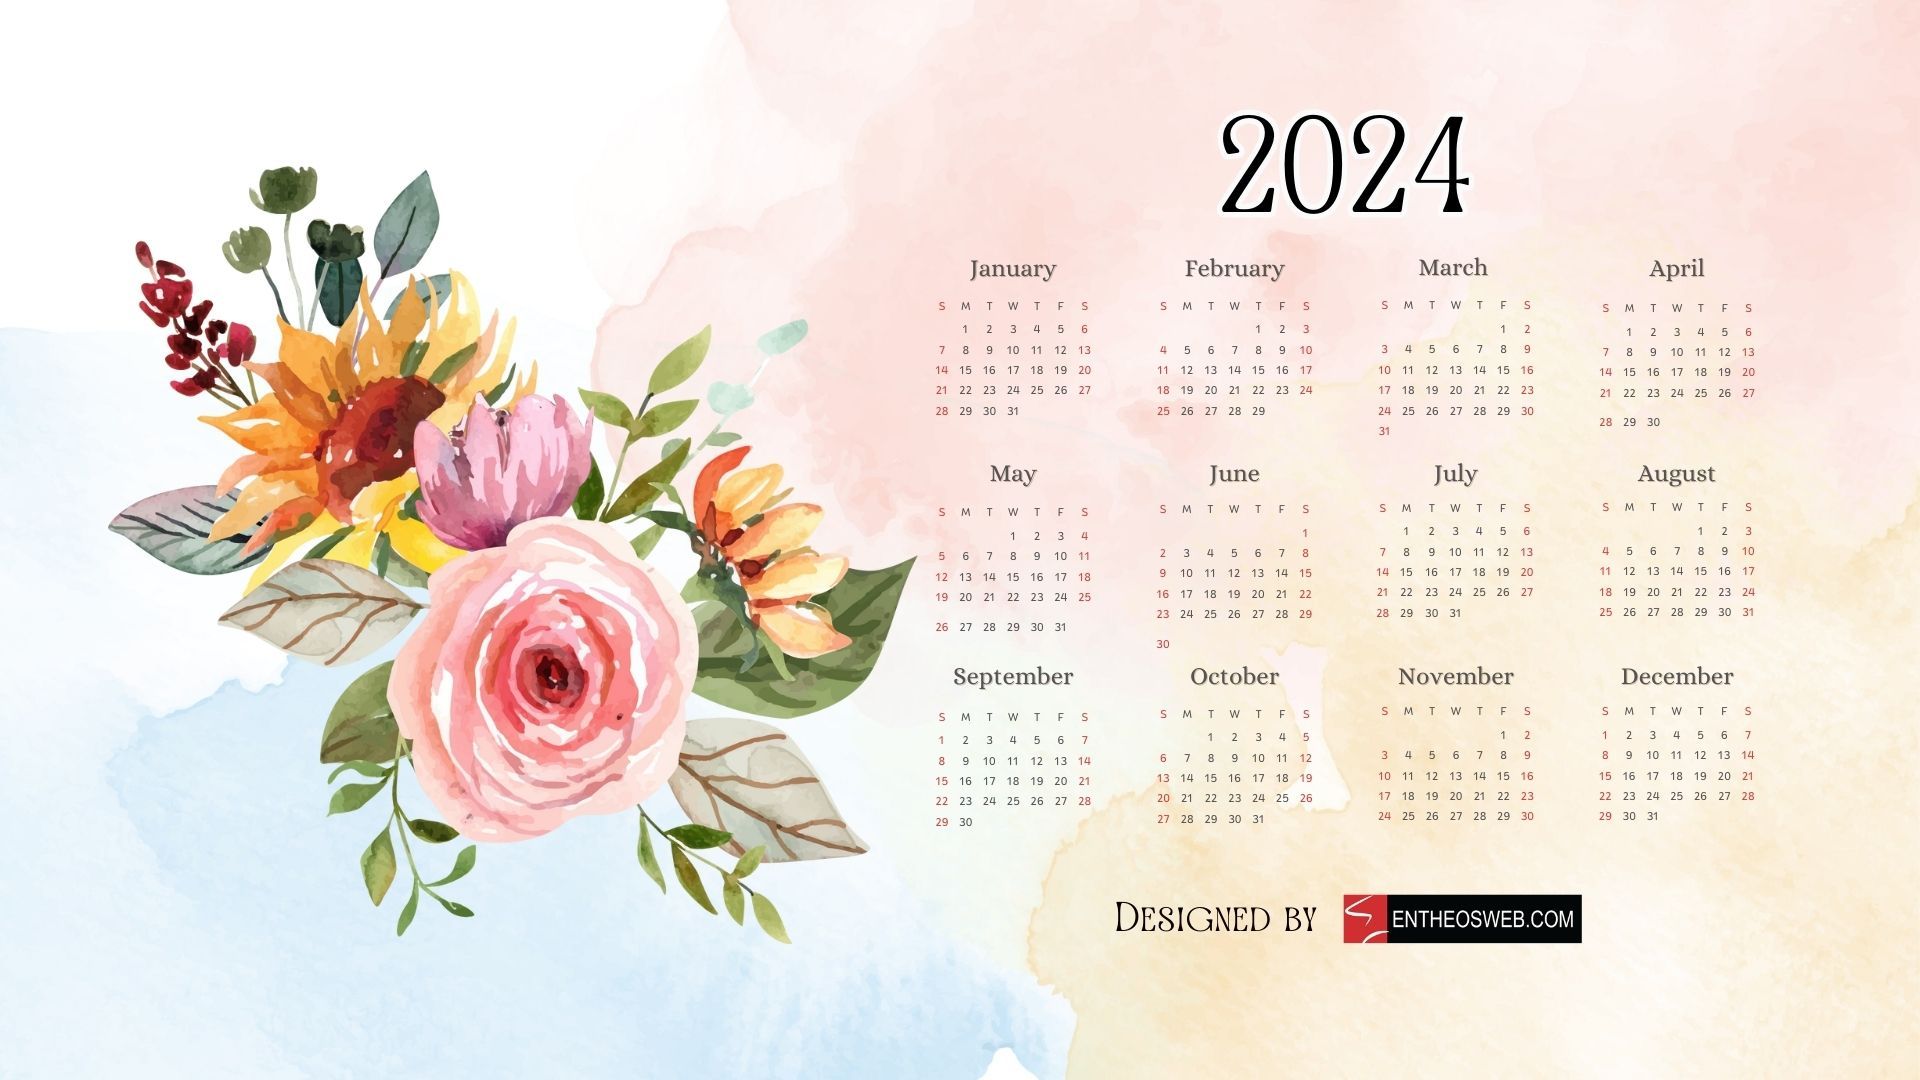 2024 Calendar Wallpapers 4k, HD 2024 Calendar Backgrounds on WallpaperBat